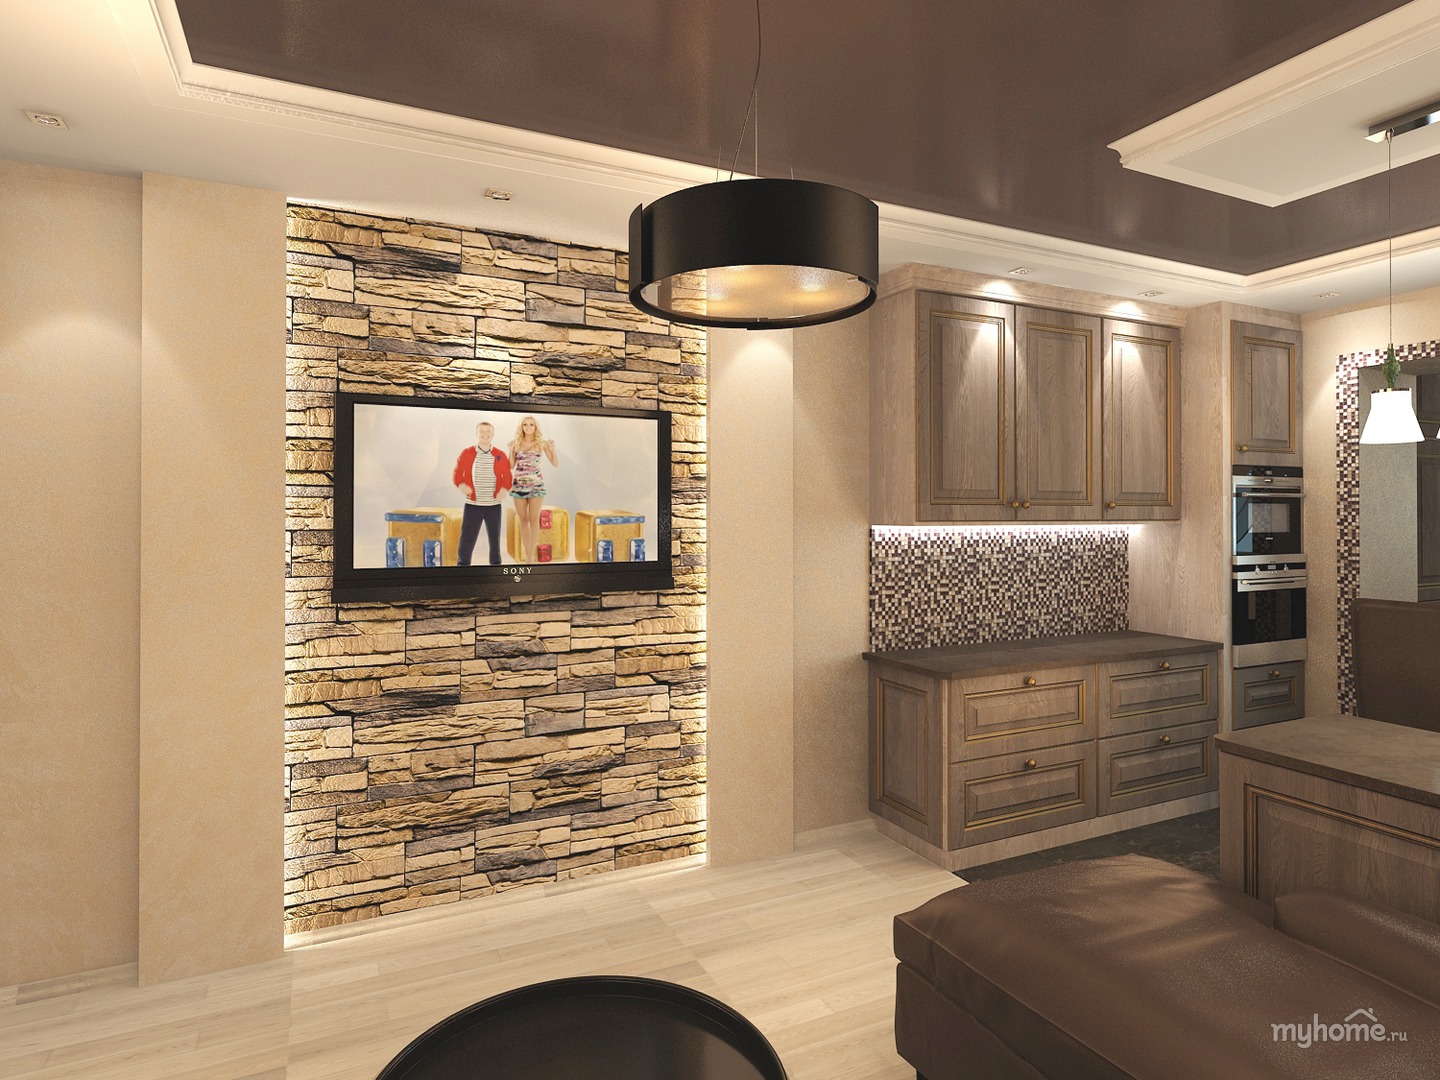 Дизайн квартиры в панельном доме — основные принципы оформления интерьера